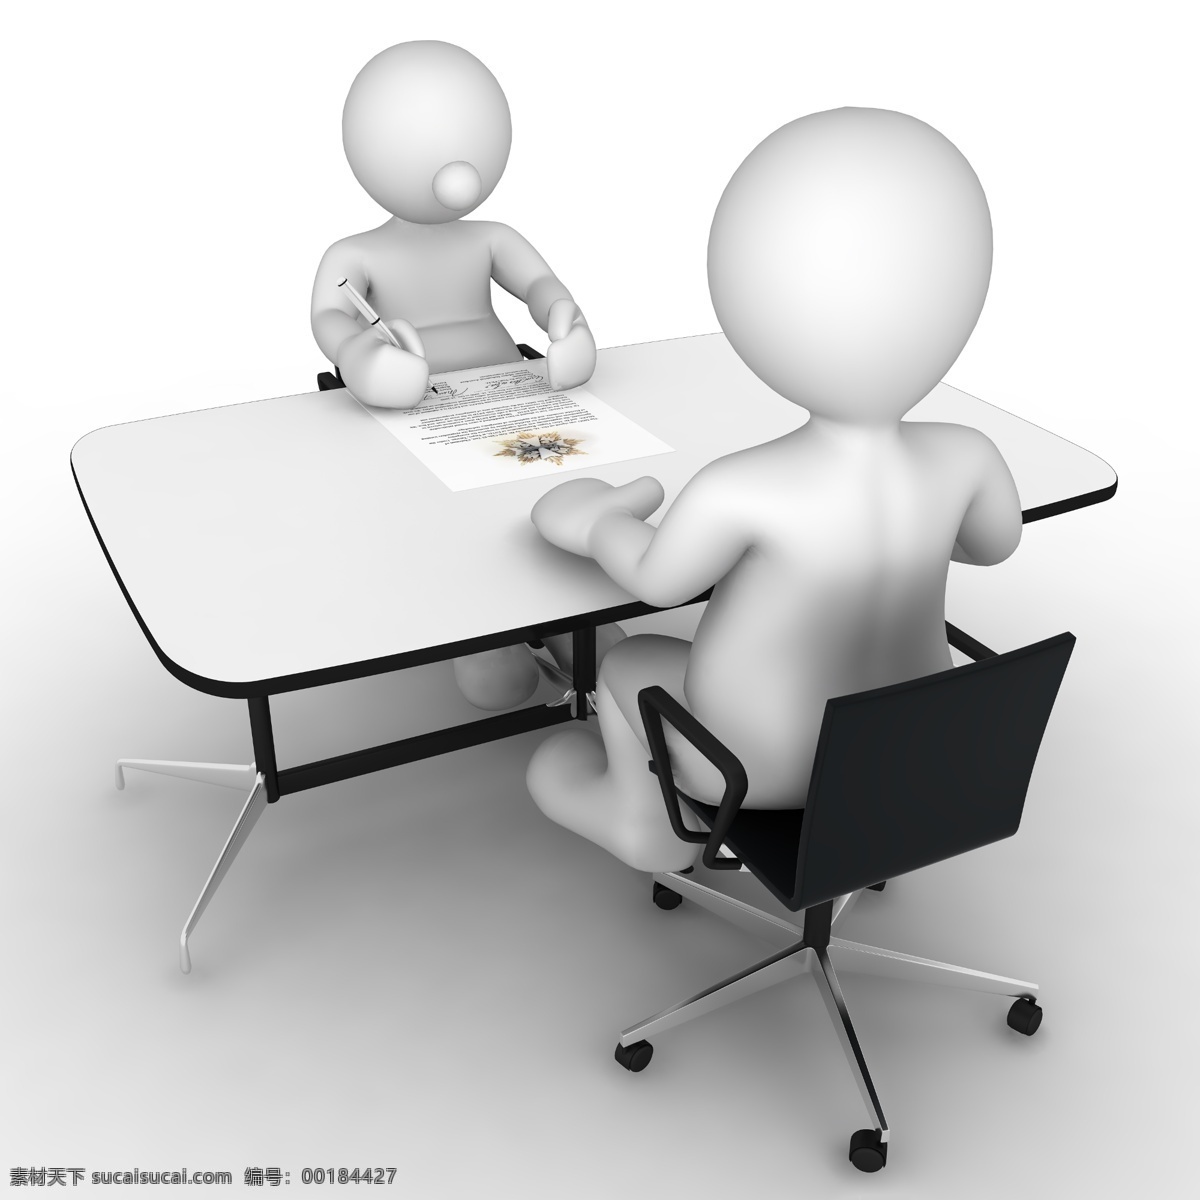 商务插画 商务 插画 商业 对坐 谈判 小白人 老板椅 文件 3d设计